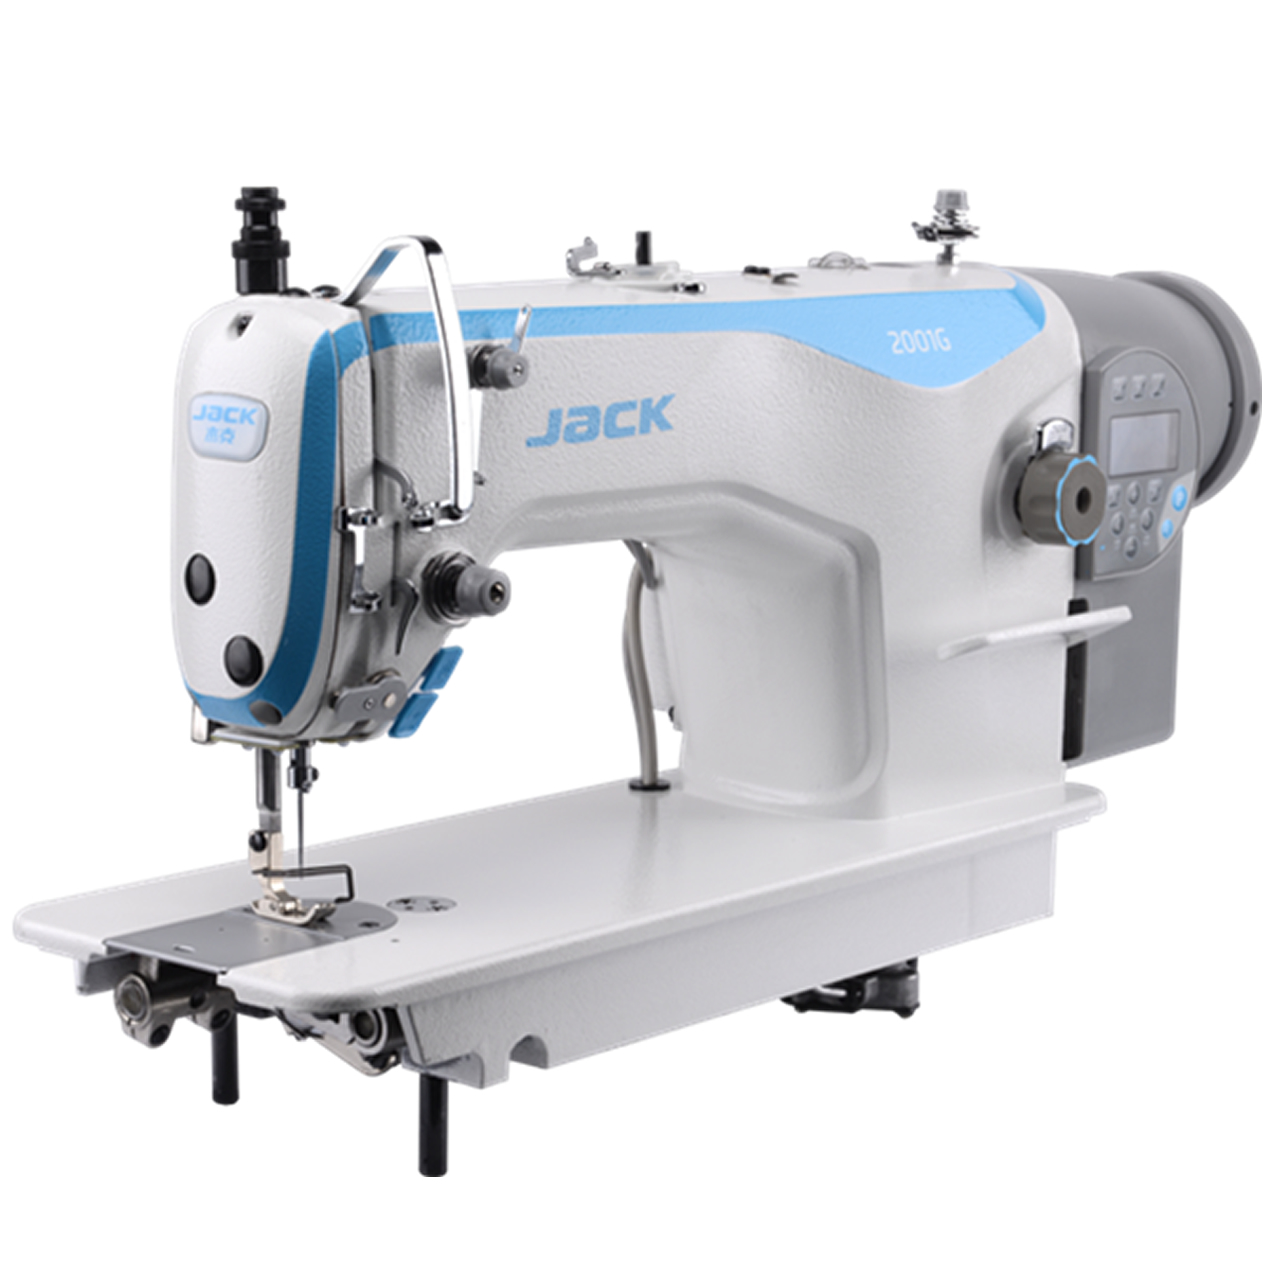 Jack 2001G - Find Sewing Machine